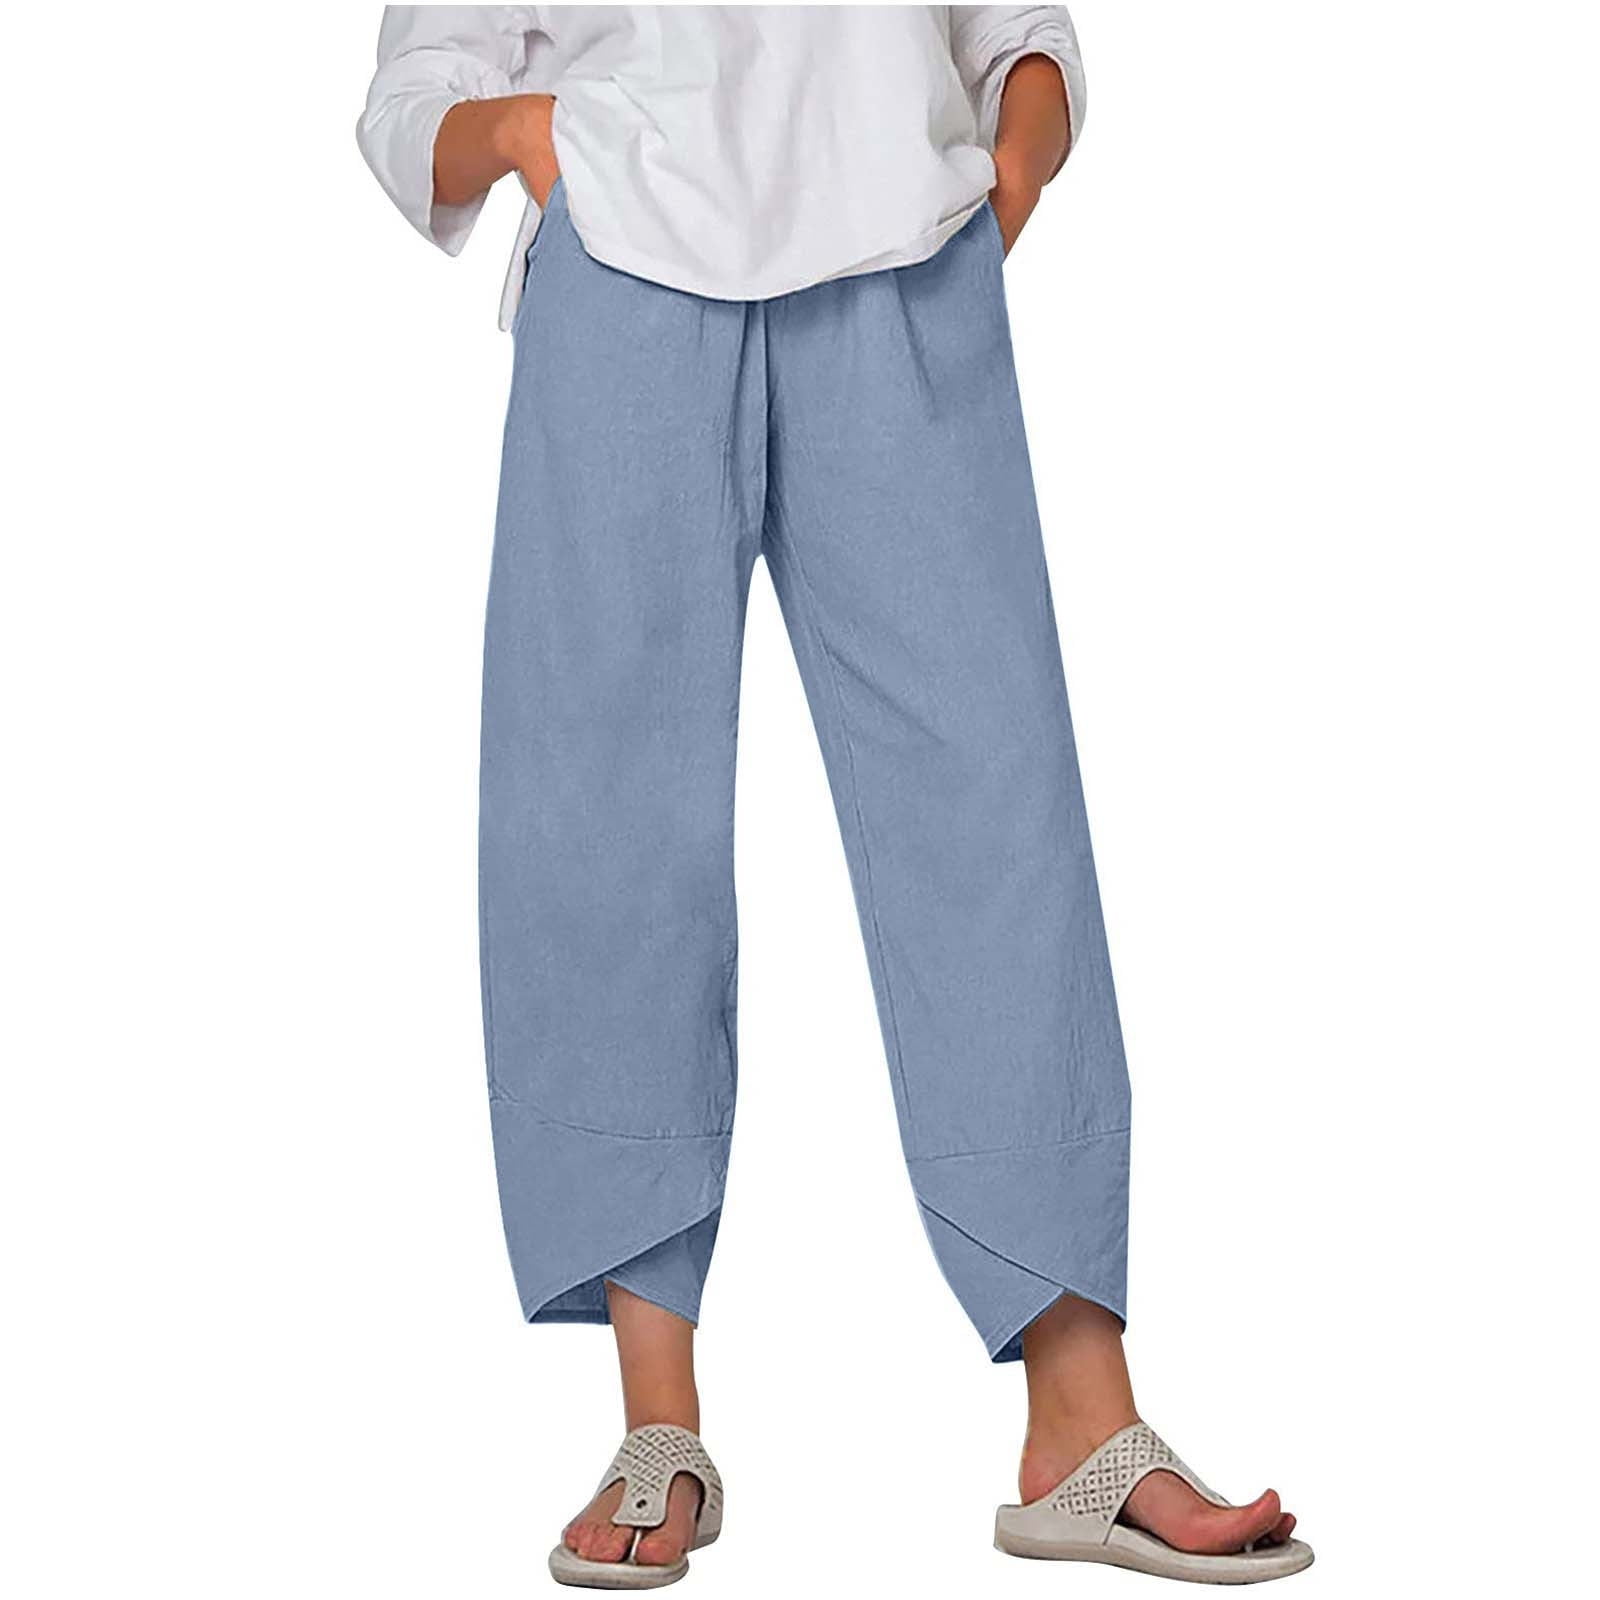 BLVB Summer Capri Pants for Women, Women's Linen Cropped